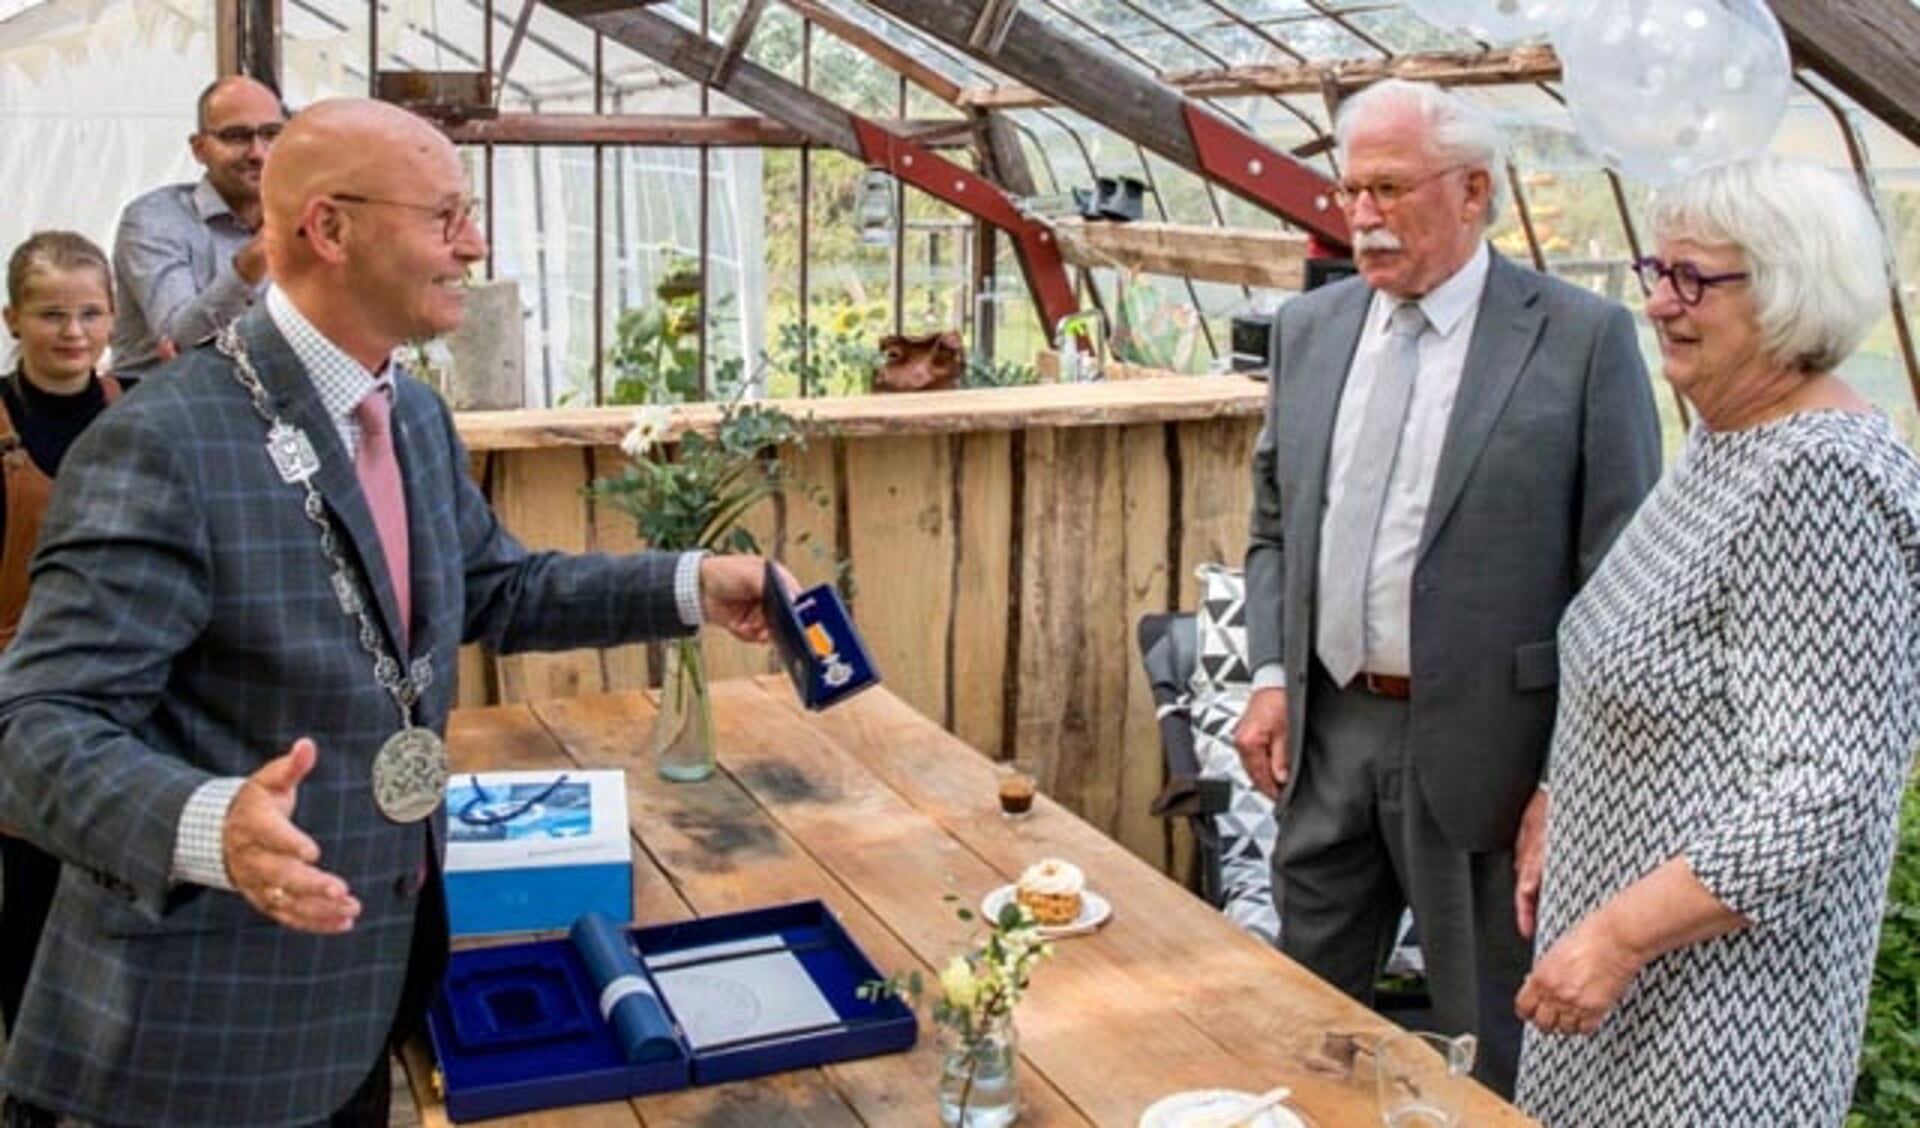  Burgemeester Koelewijn overhandigt de koninklijke onderscheiding